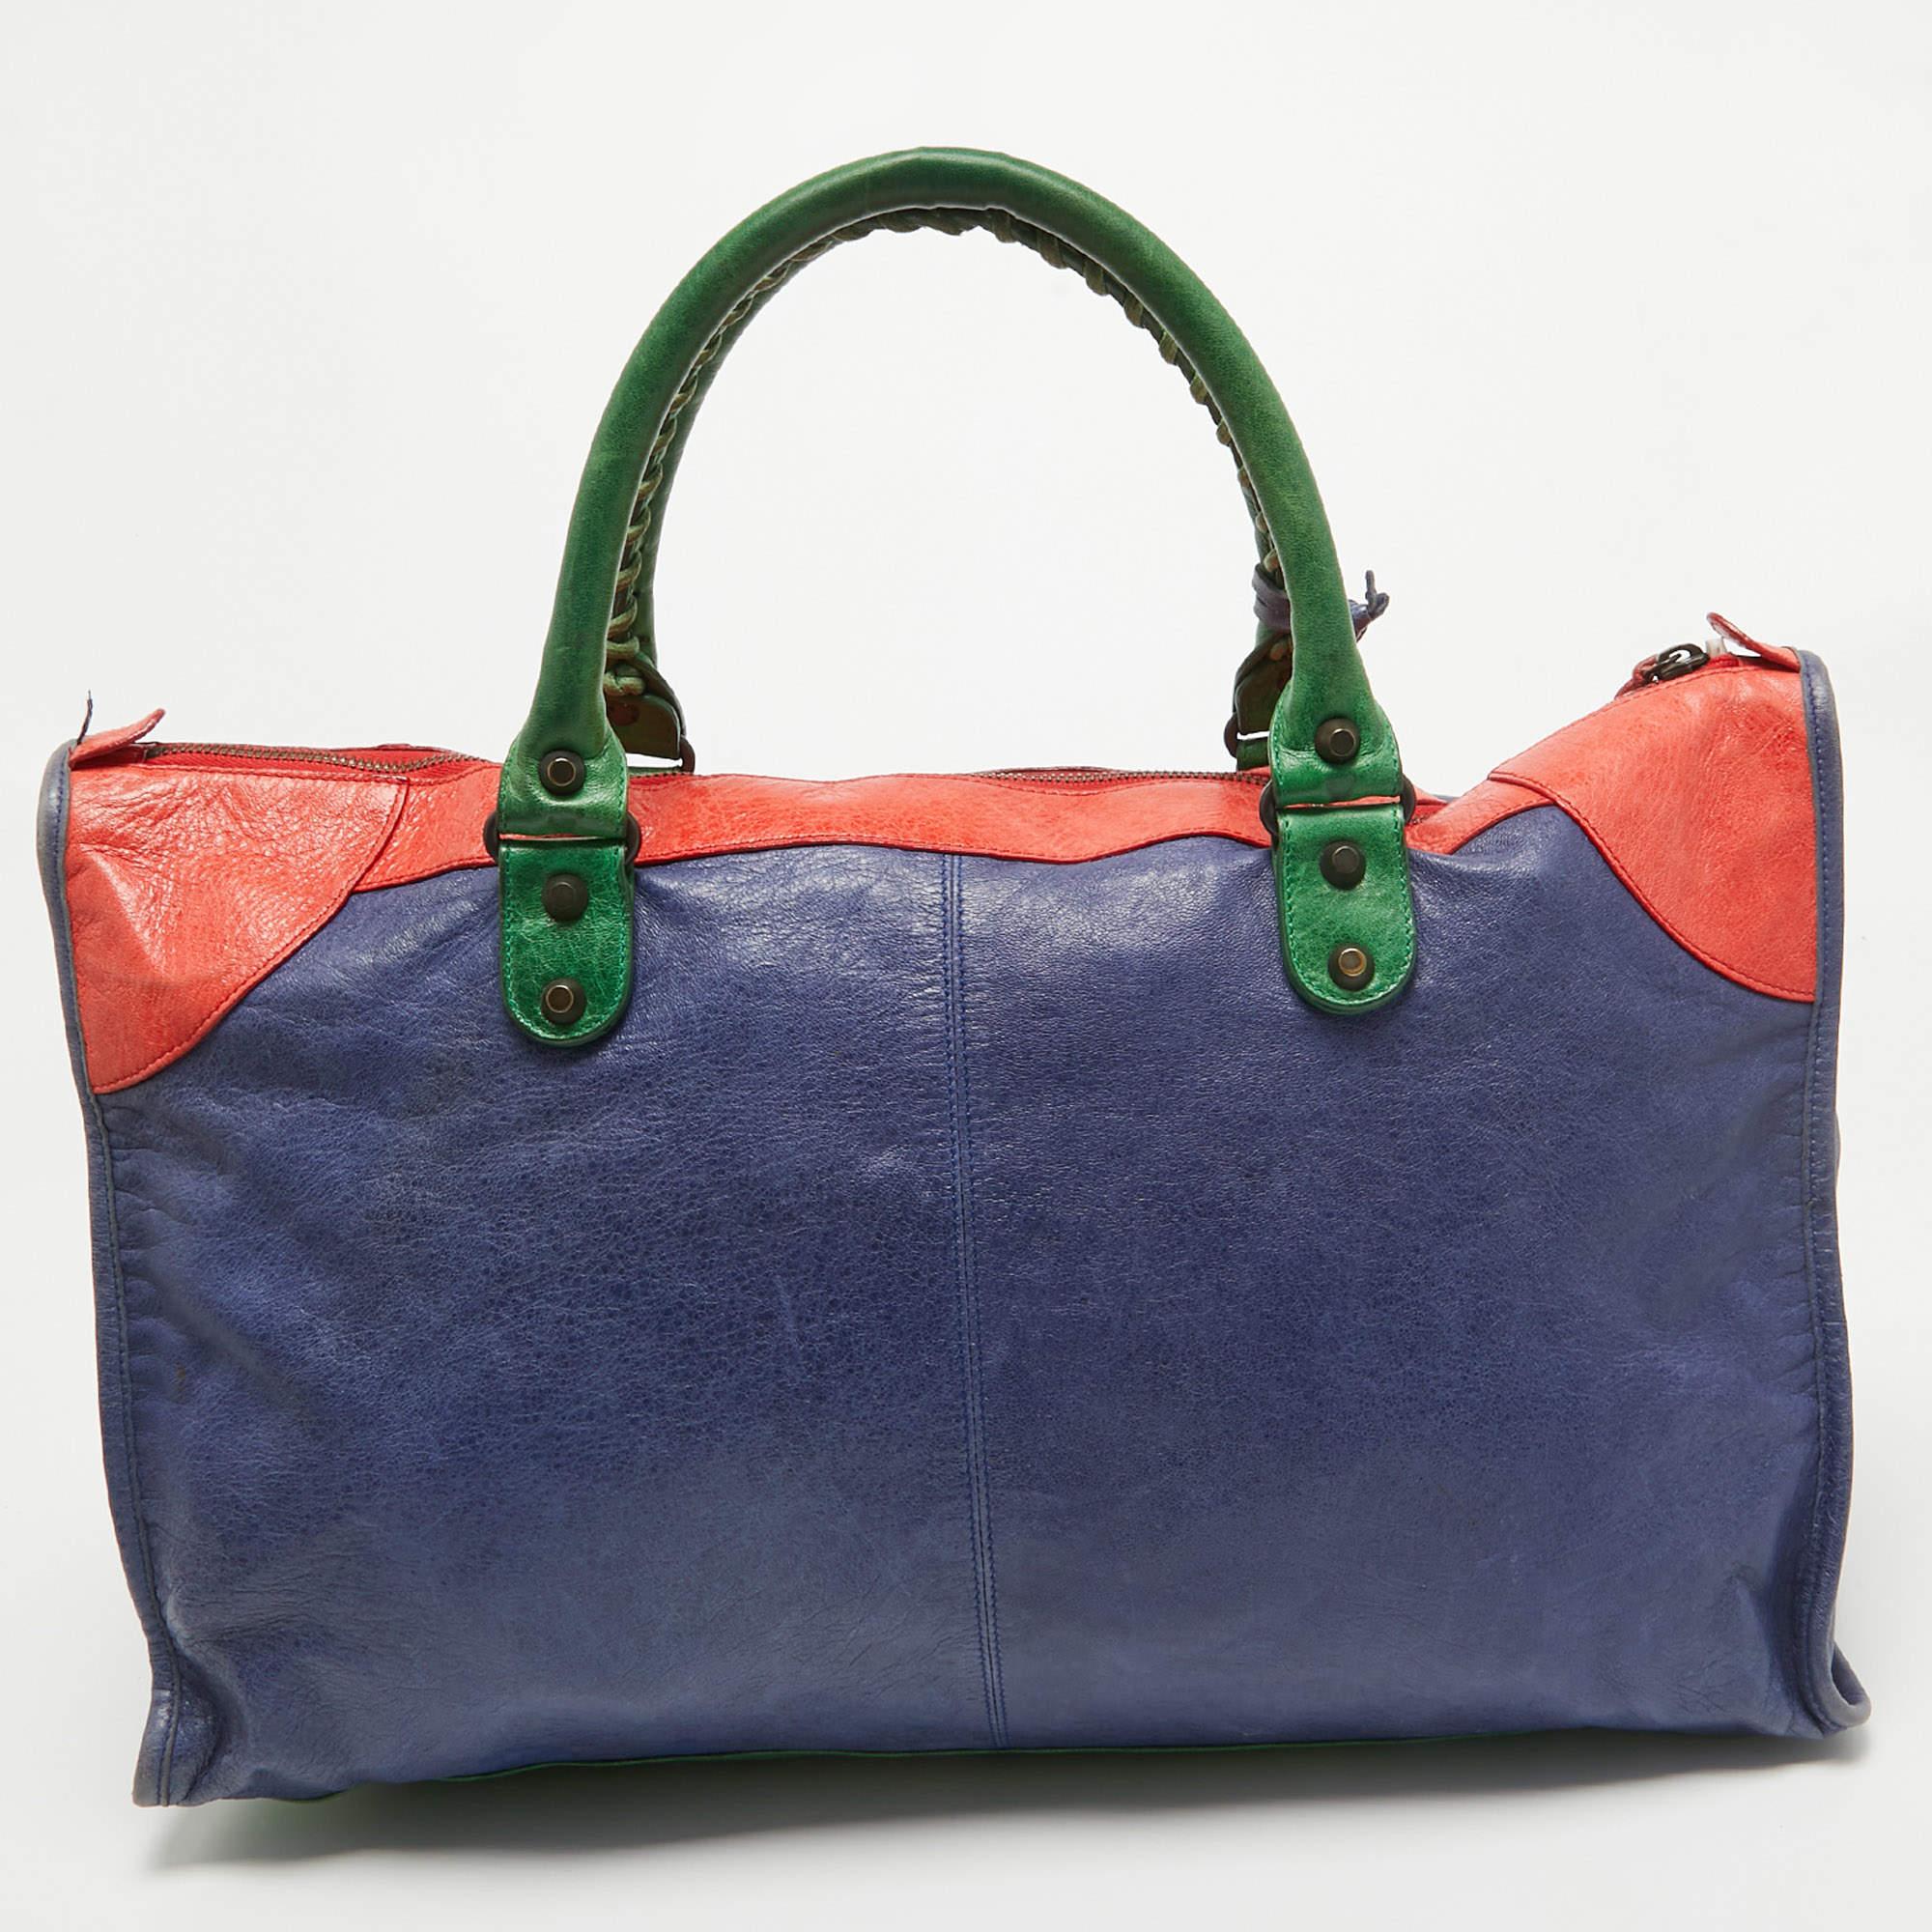 Offrez-vous le luxe avec ce sac Balenciaga. Méticuleusement fabriqué à partir de matériaux de première qualité, il allie un design exquis, un savoir-faire impeccable et une élégance intemporelle. Cet accessoire de mode rehausse votre style.

